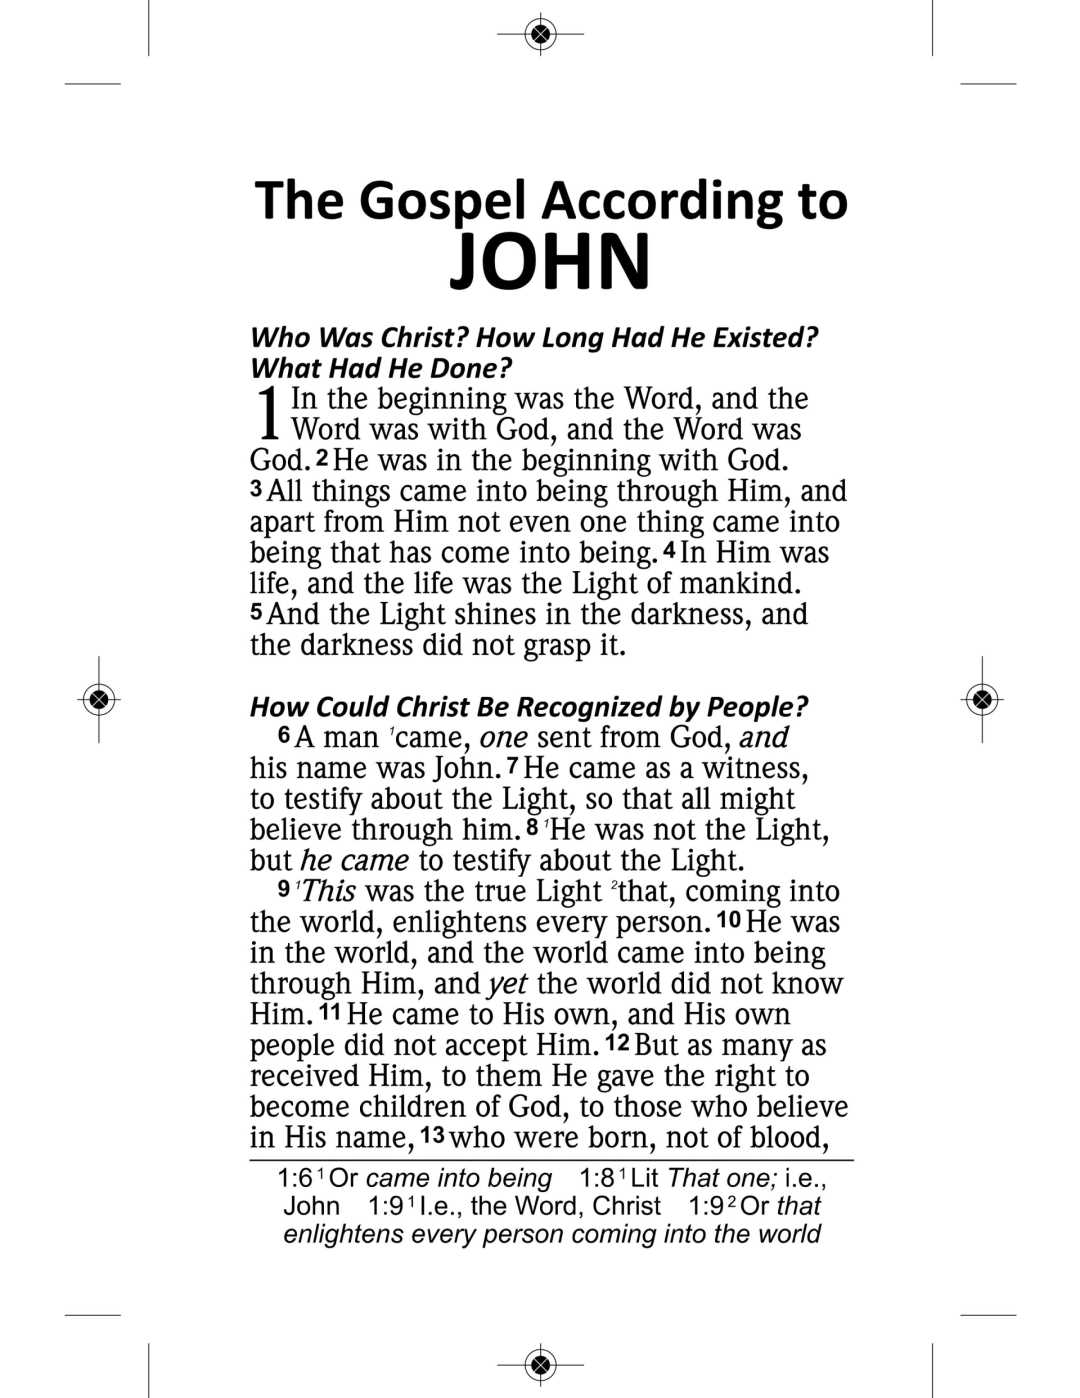 NAS 2020 Plan of Life - Gospel of John (Full Case of 300)